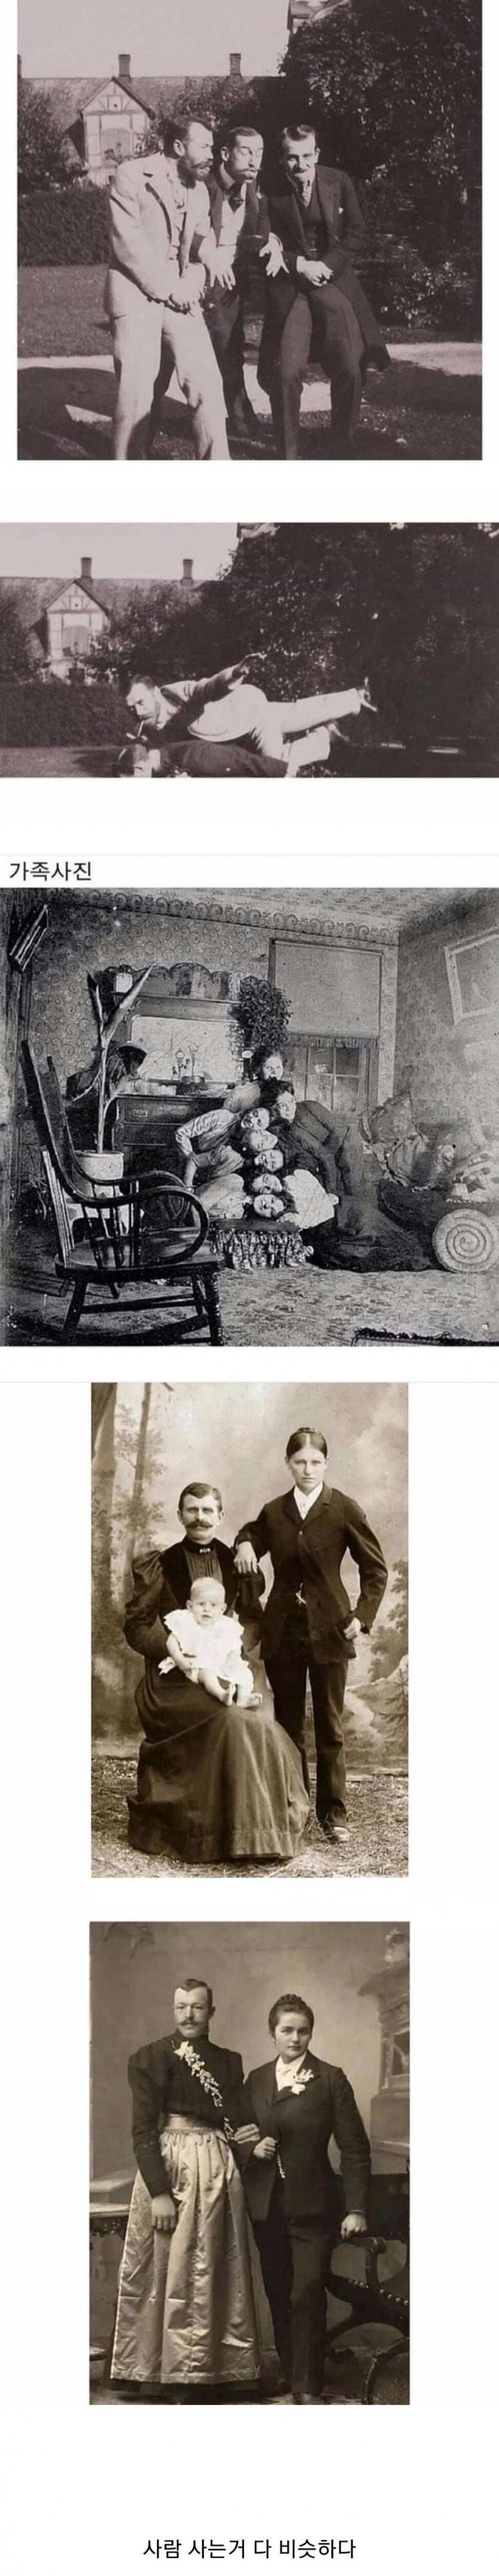 고전] 19세기 인싸의 사진.jpg